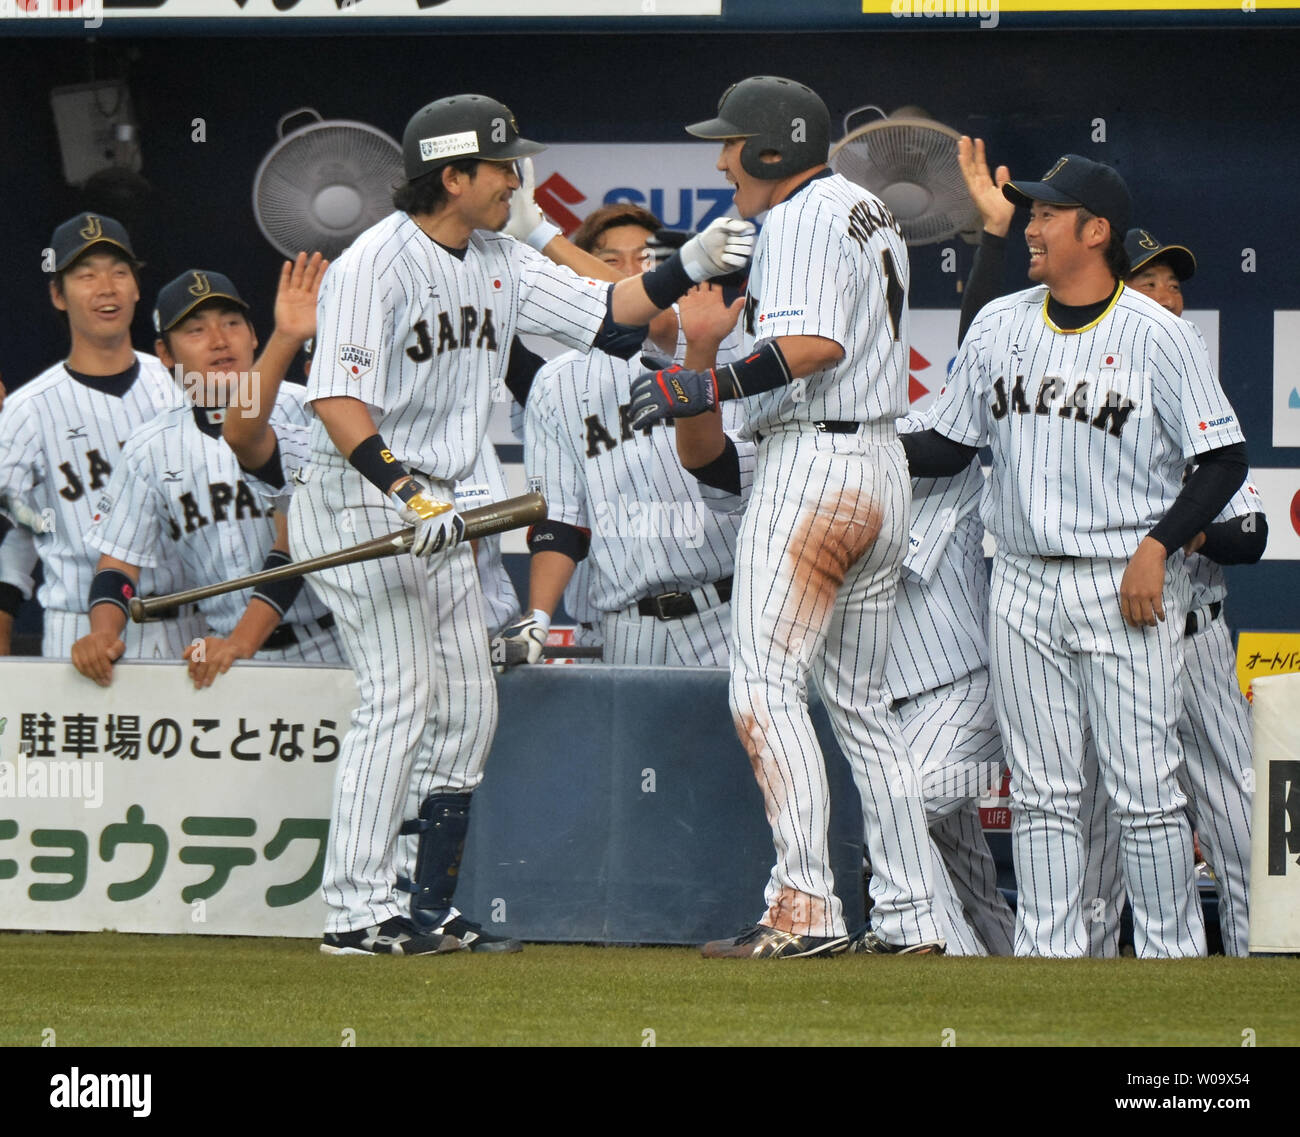 L'équipe nationale japonaise Seiichi Uchikawa célèbre avec son coéquipier après avoir marqué dans la deuxième manche contre MLB All Stars au Kyocera Dome Osaka à Osaka, Japon, le 12 novembre 2014. UPI/Keizo Mori Banque D'Images